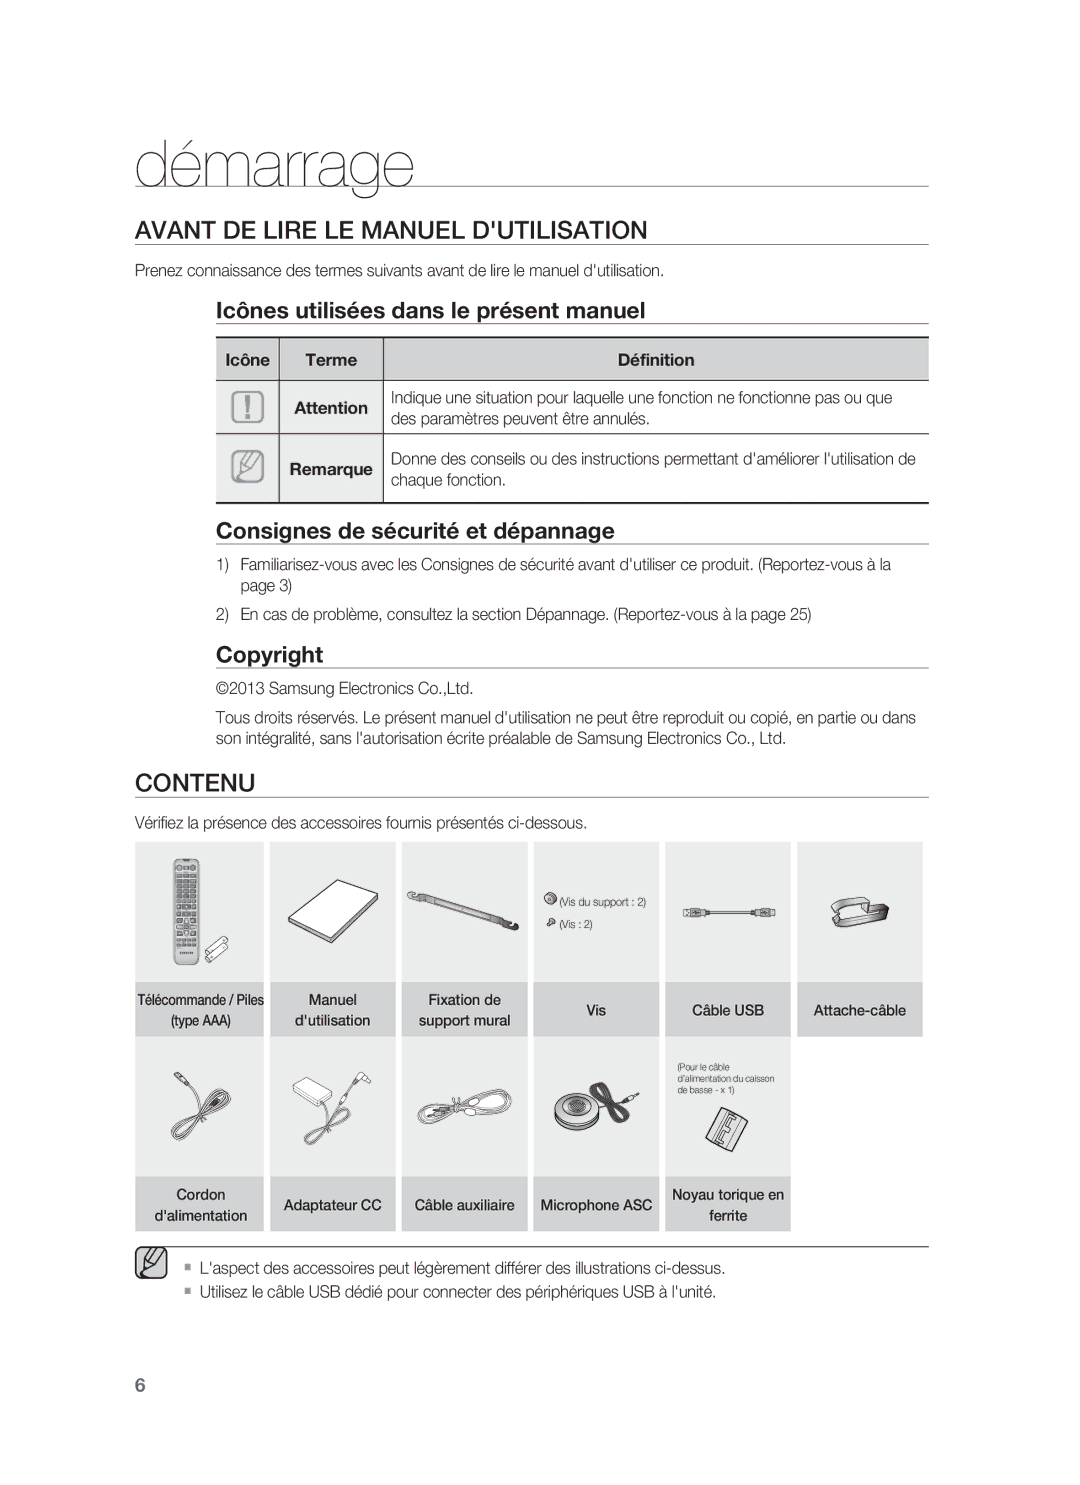 Samsung HW-F850/ZF manual Démarrage, Avant DE Lire LE Manuel Dutilisation, Contenu 